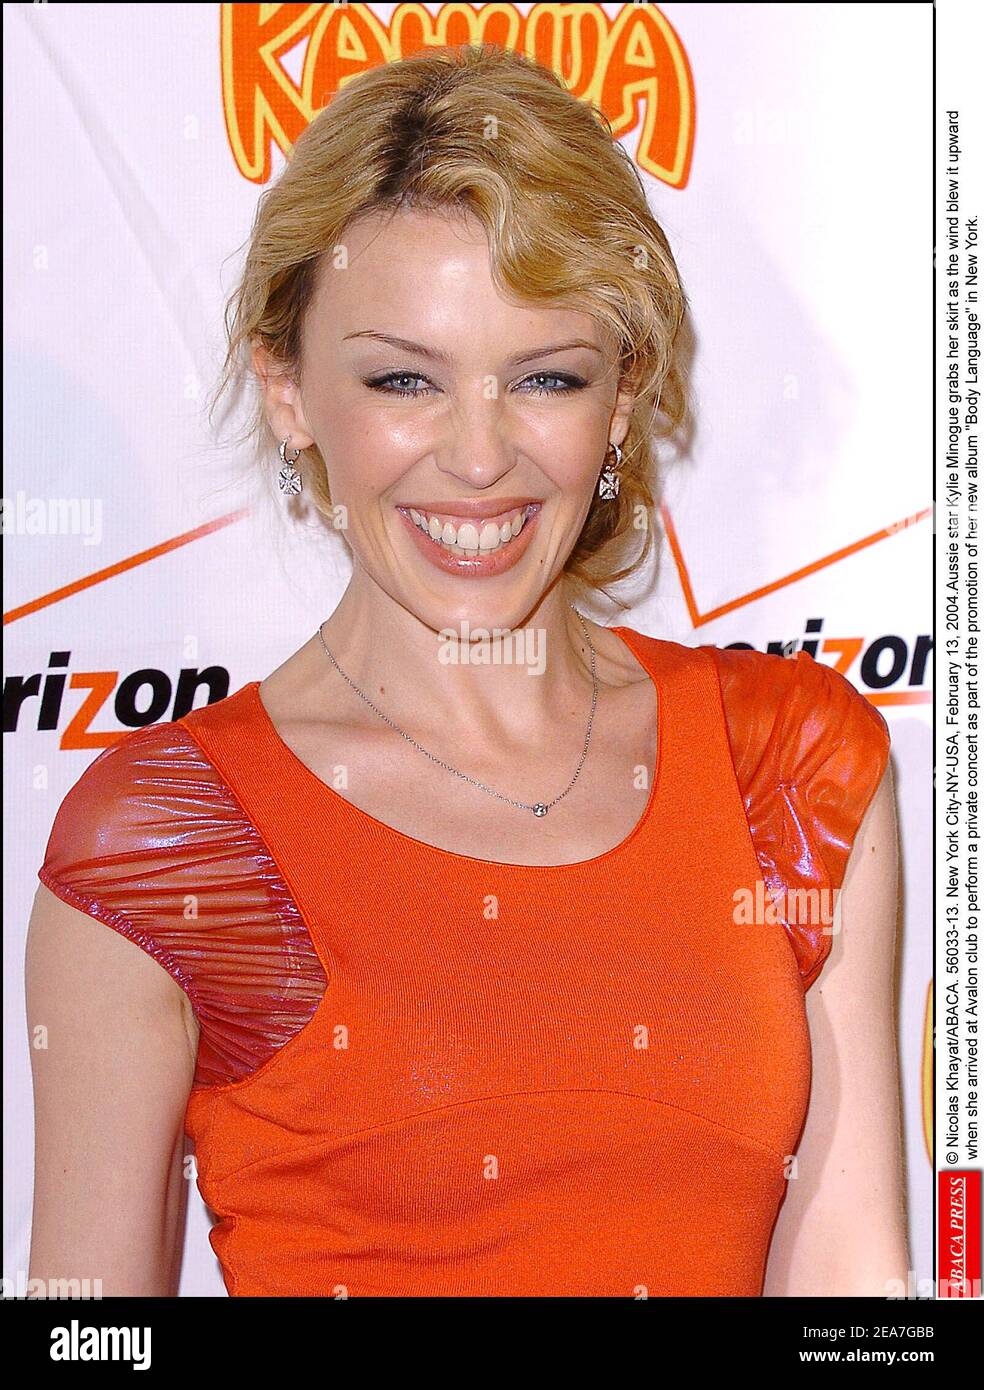 © Nicolas Khayat/ABACA. 56033-13. New York City-NY-USA, 13 febbraio 2004.la star australiana Kylie Minogue afferra la sua gonna mentre il vento la soffiò verso l'alto quando arrivò al club Avalon per eseguire un concerto privato come parte della promozione del suo nuovo album Body Language a New York. Foto Stock